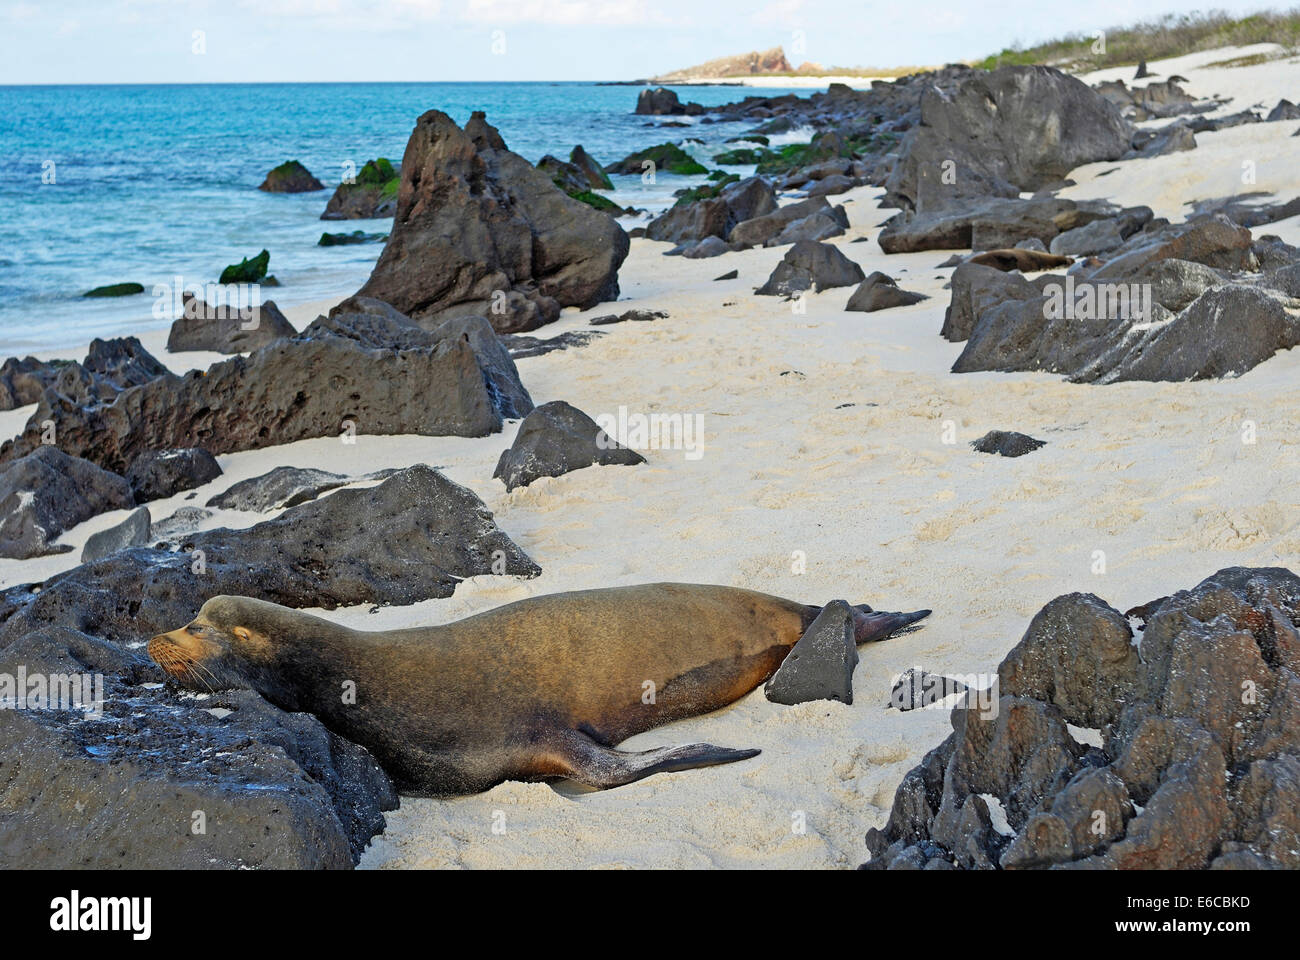 Lion de mer Galapagos (Zalophus californianus wollebaeki) dormir sur la plage, l'île d'Espanola, îles Galapagos, Equateur Banque D'Images